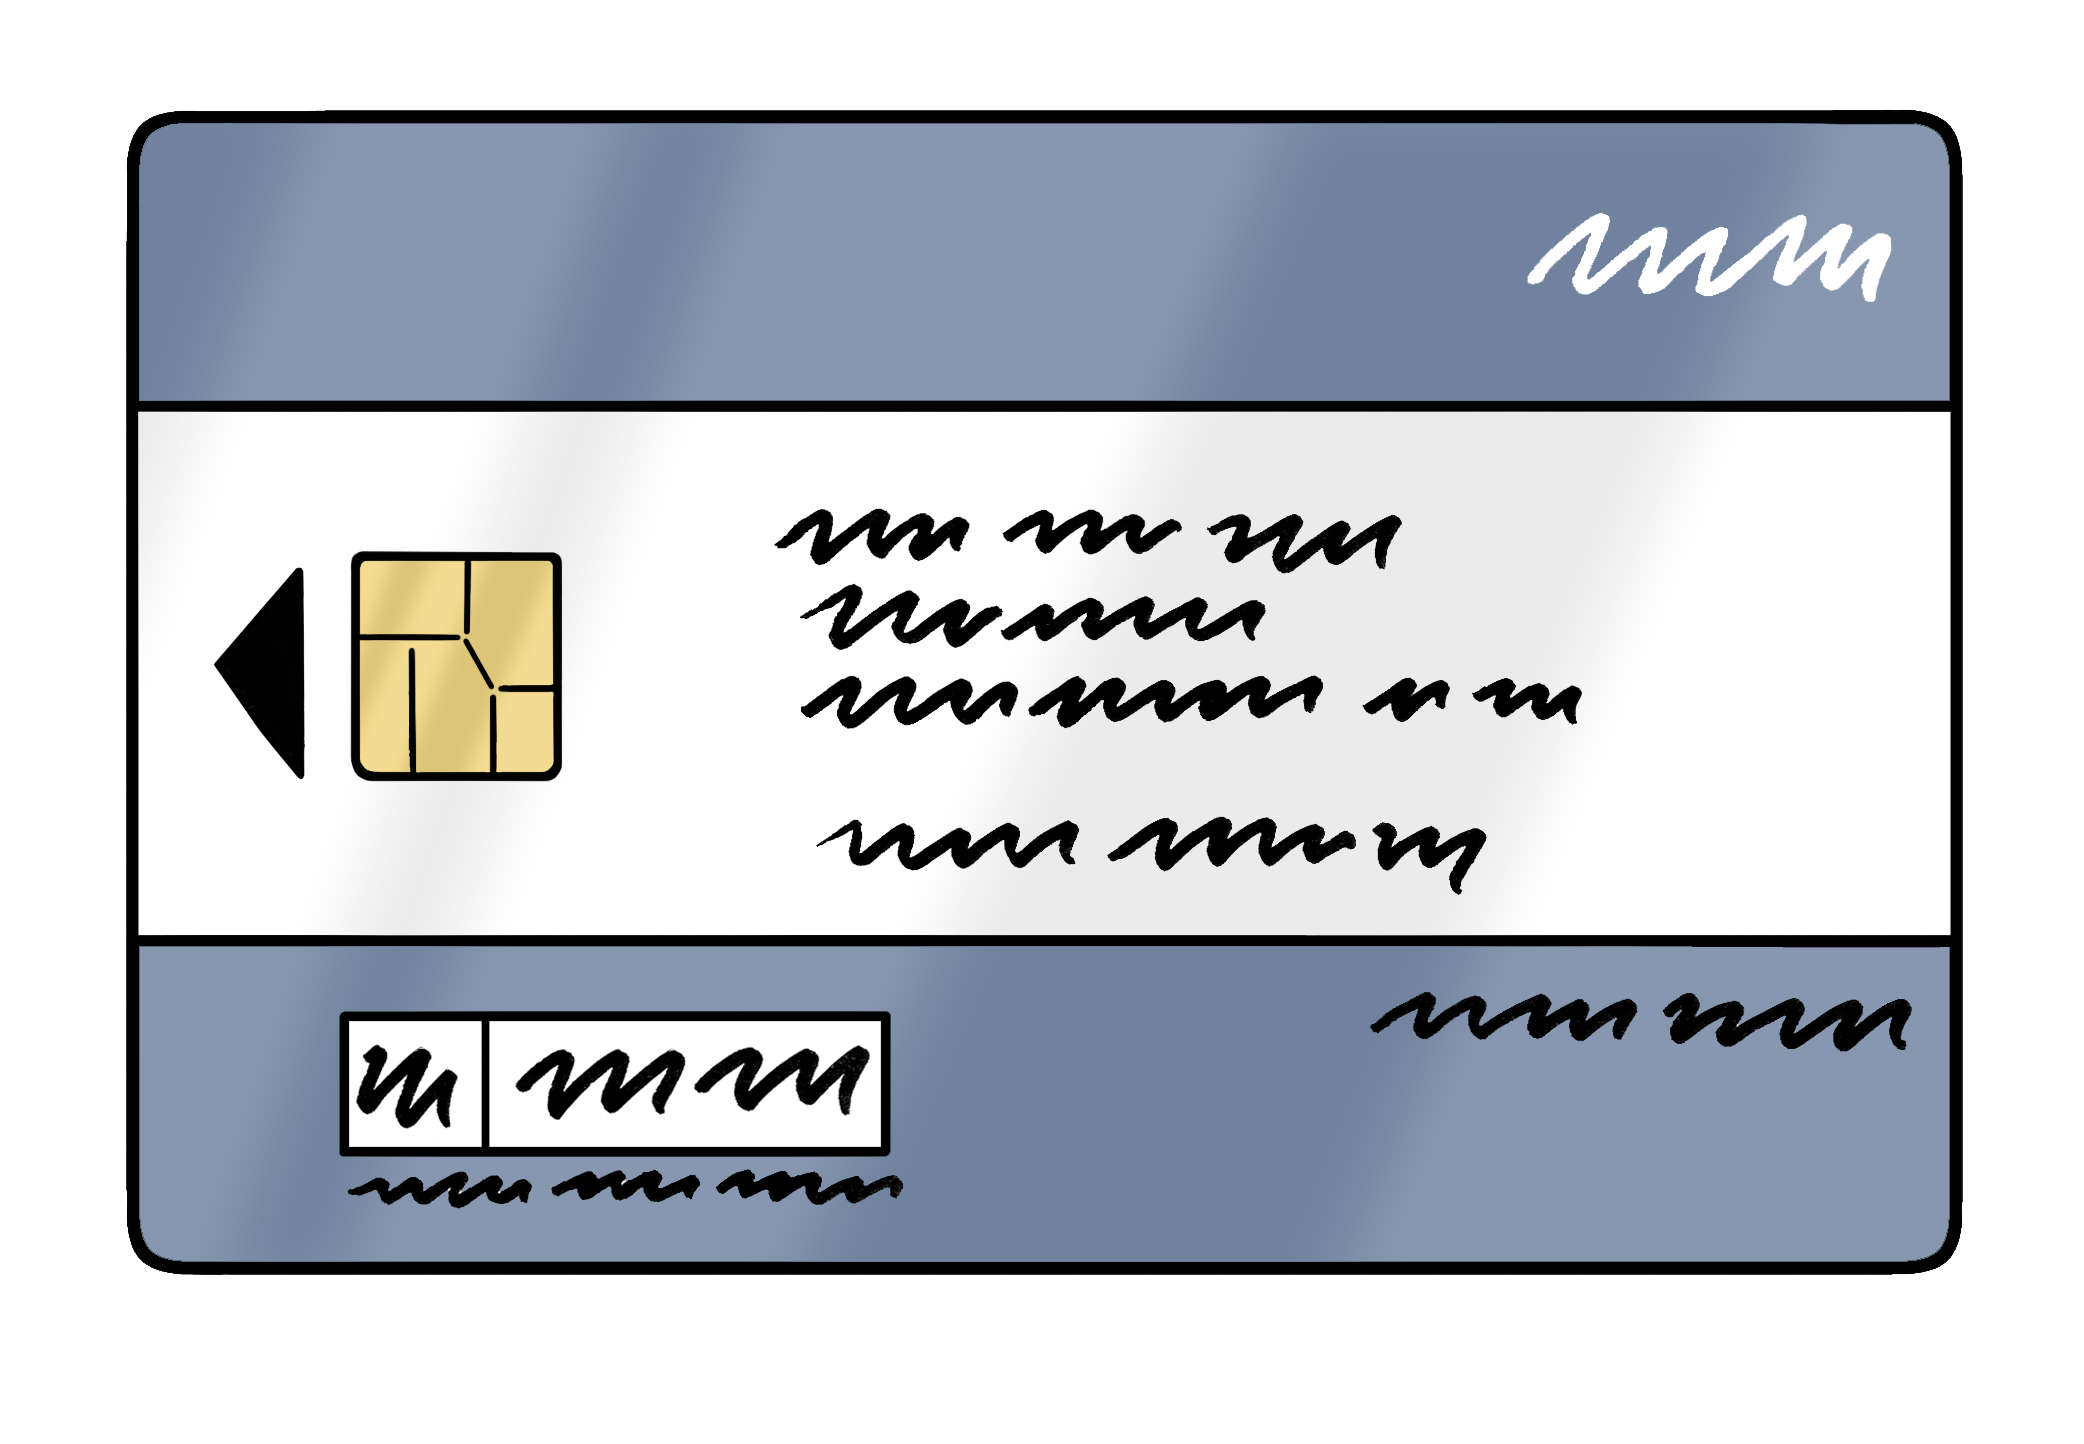 Eine gezeichnete Chipkarte